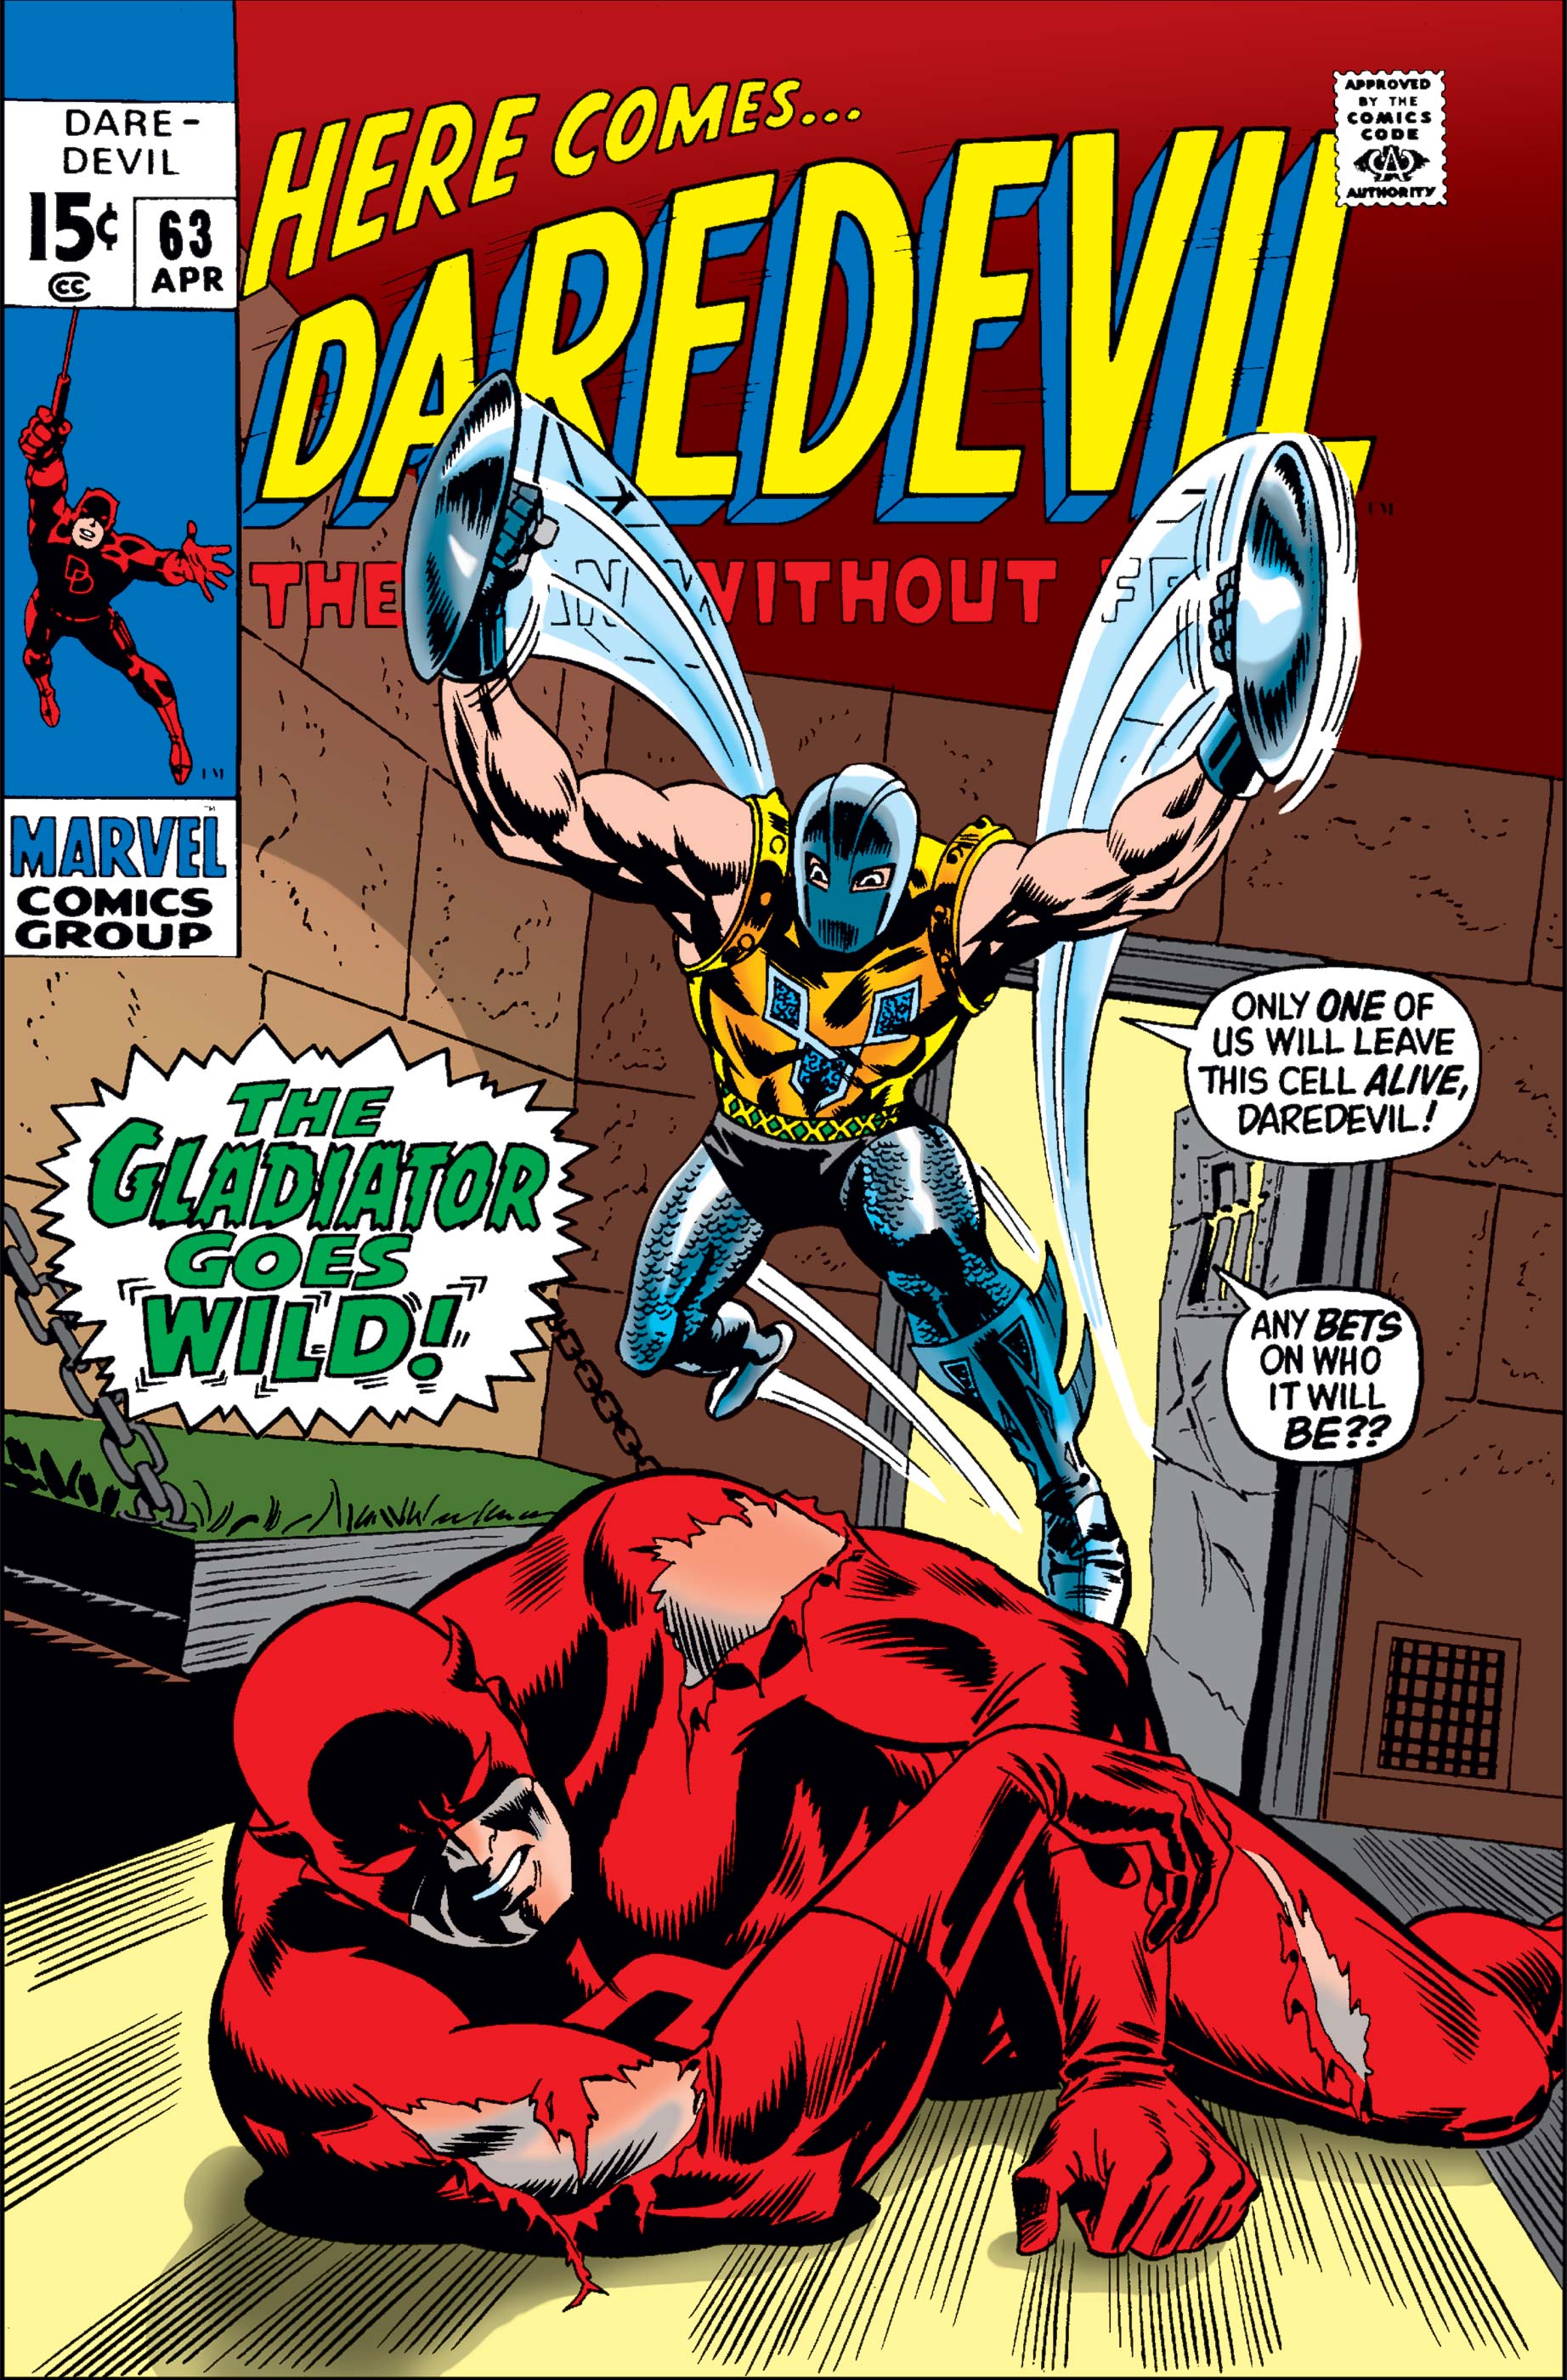 Daredevil (1964) #63